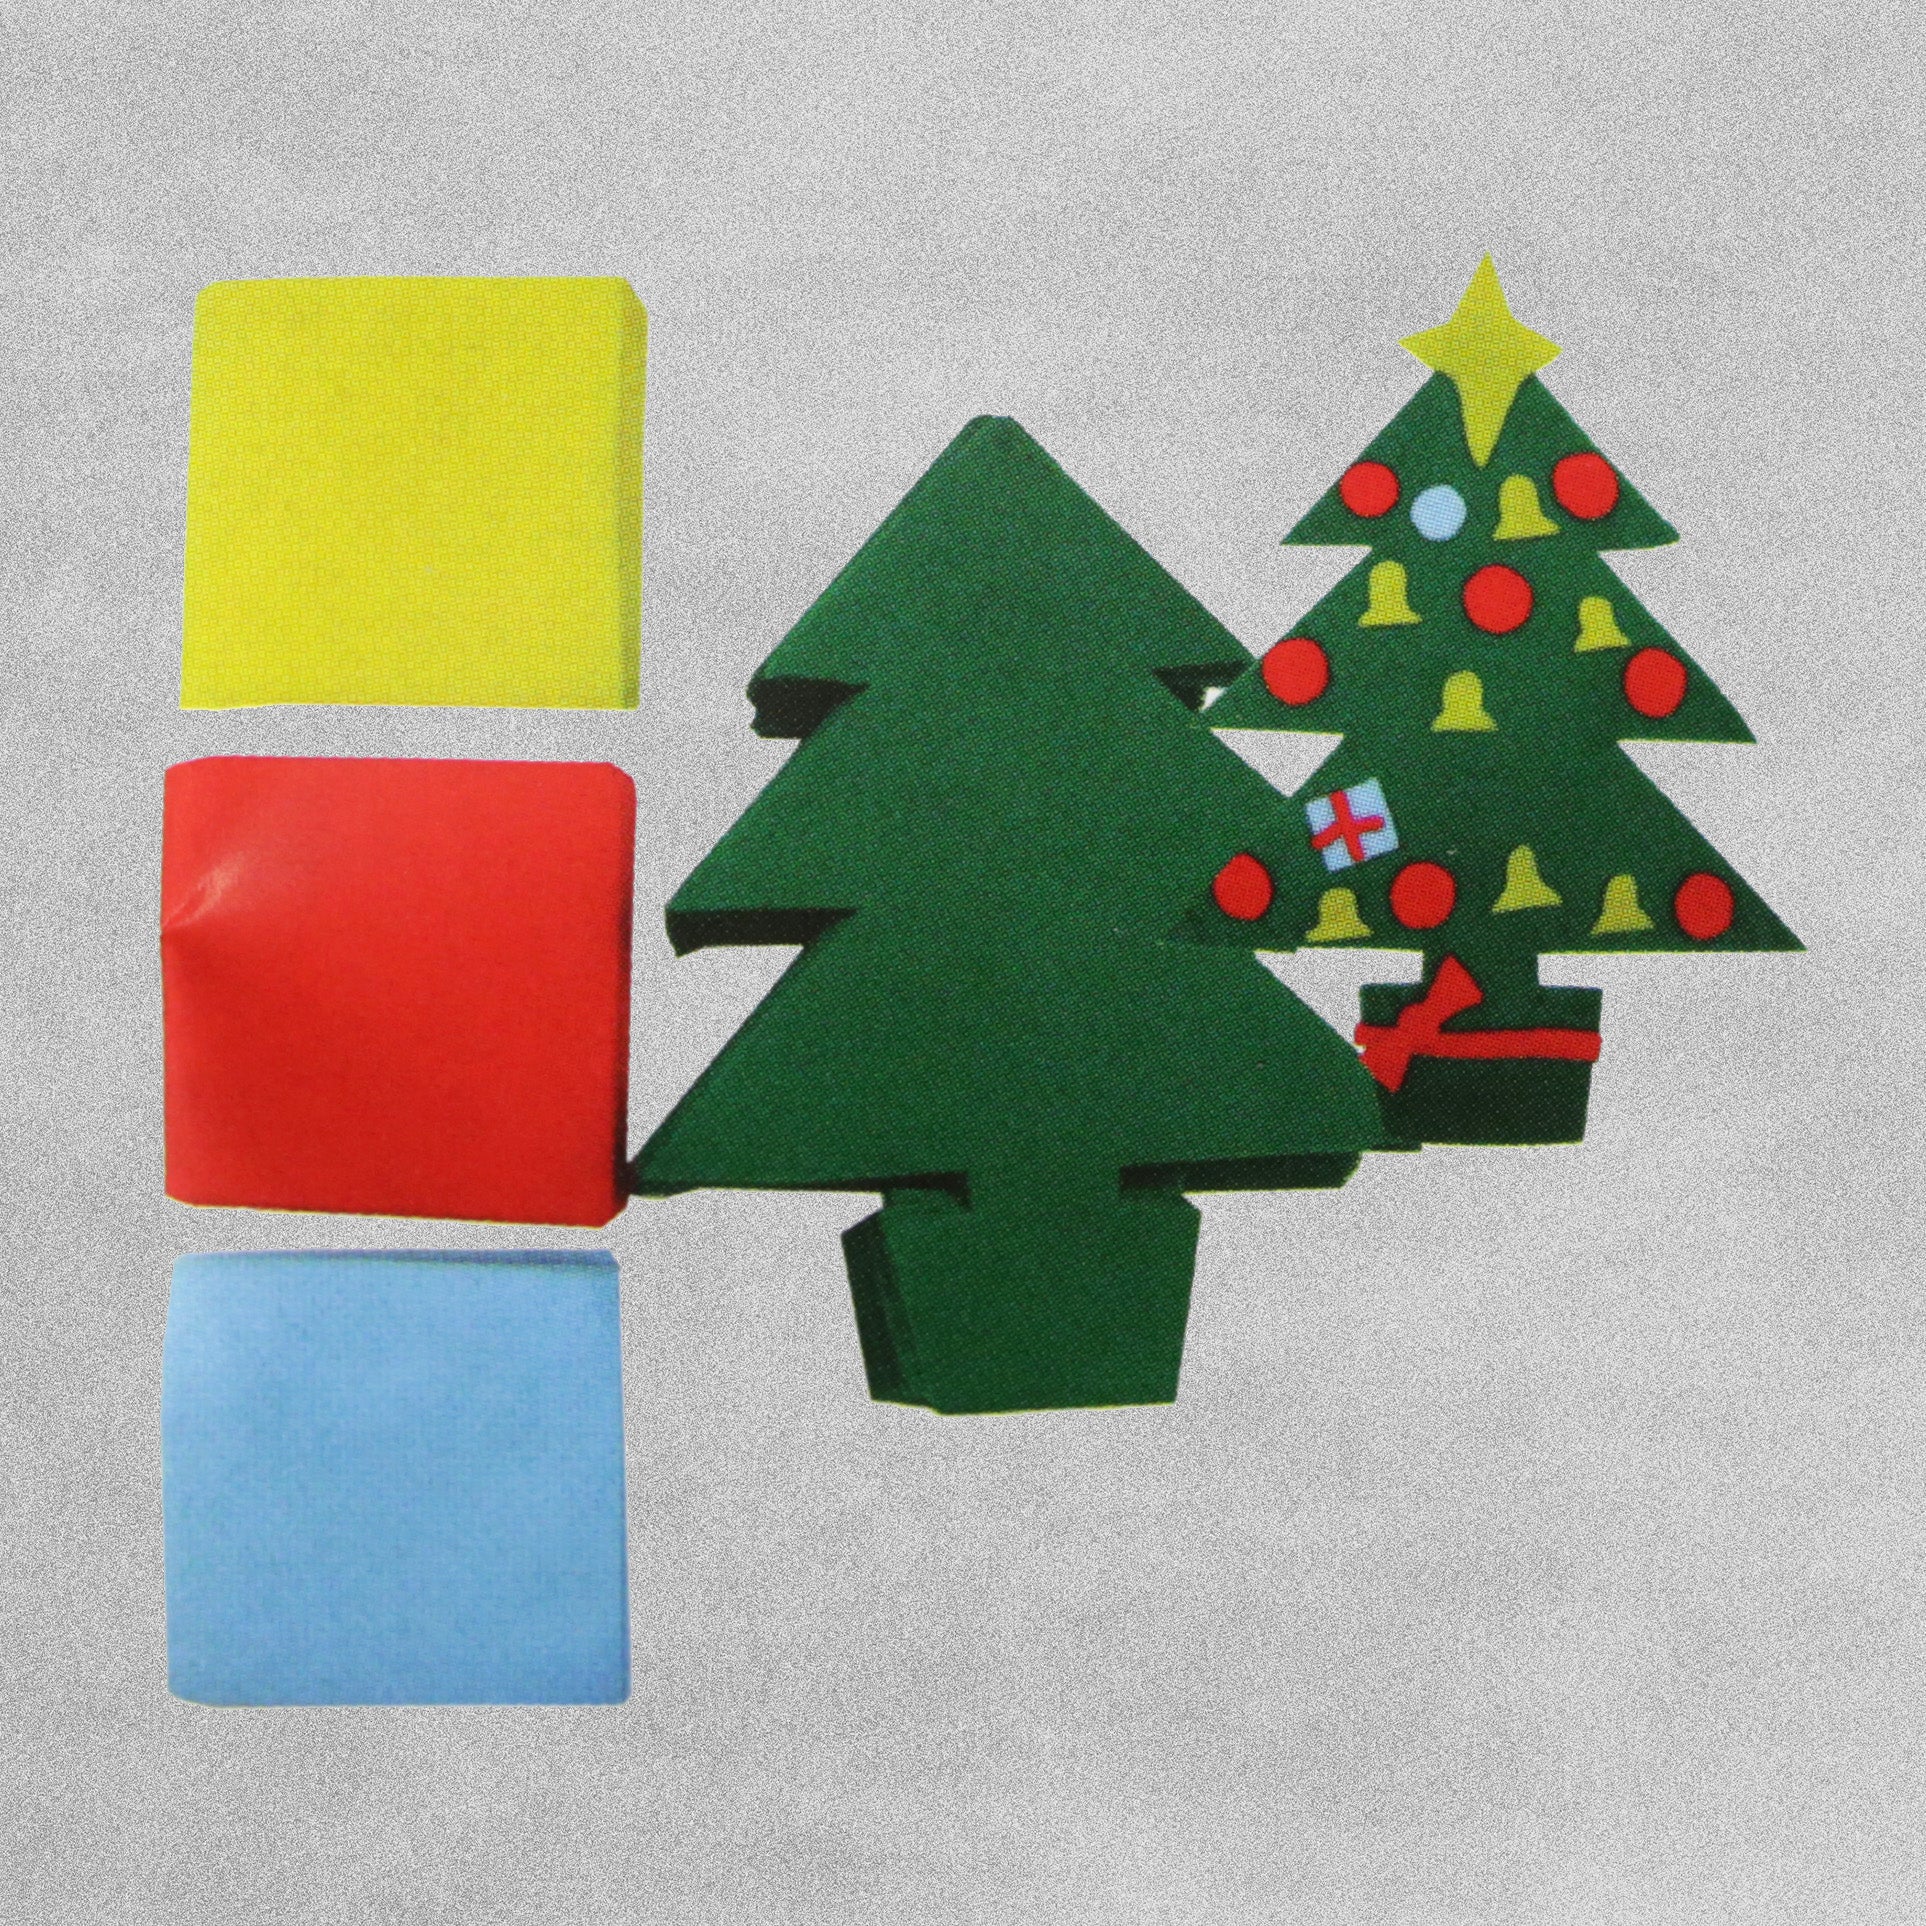 Christmas Tree Felt Craft Kit - Makes 60